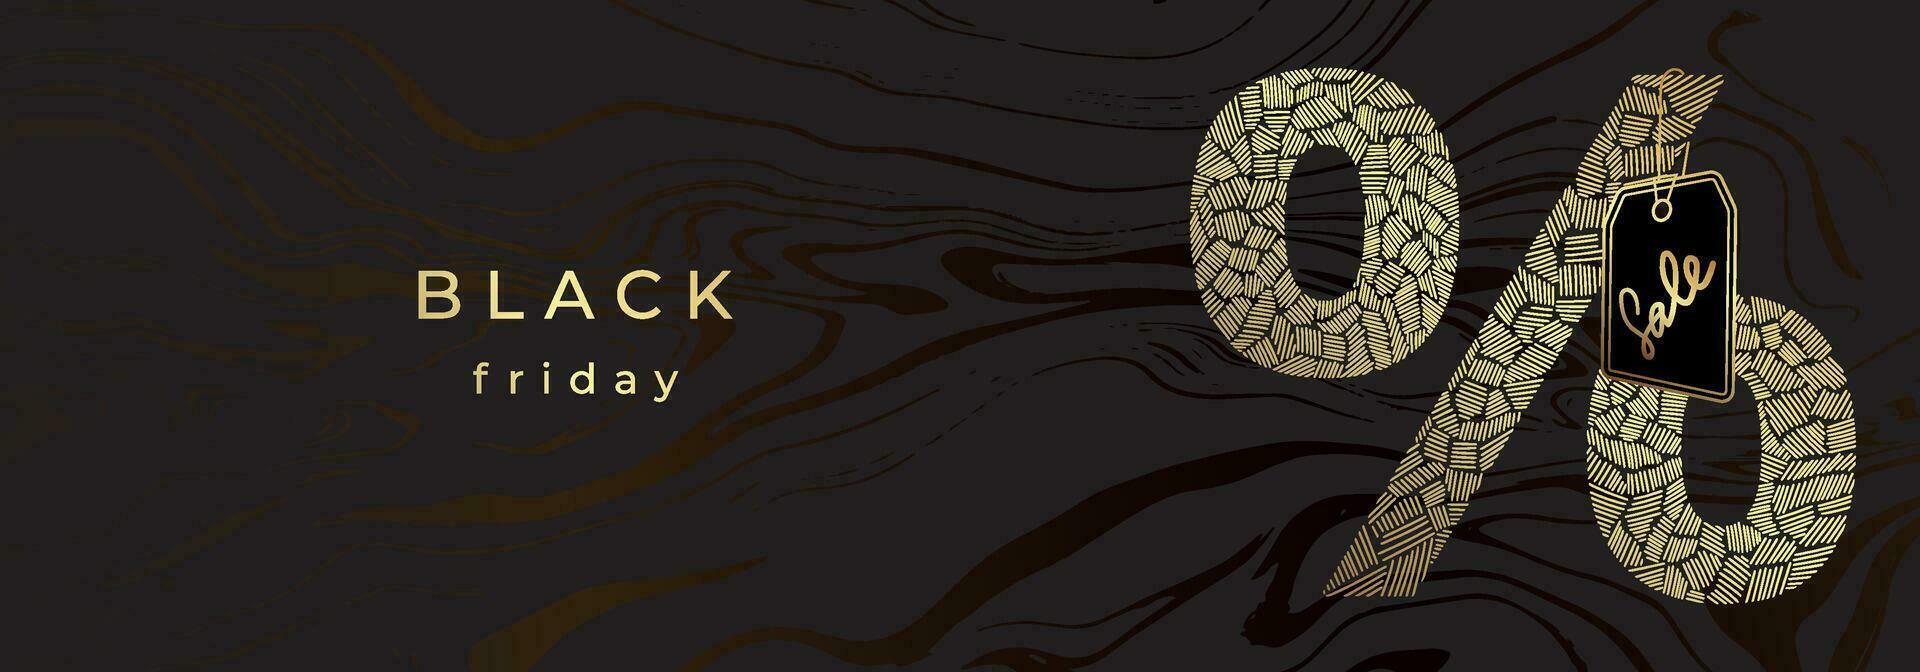 luxe gouden banier voor zwart vrijdag. gouden getextureerde procent teken met prijs label. zwart marmeren achtergrond vector